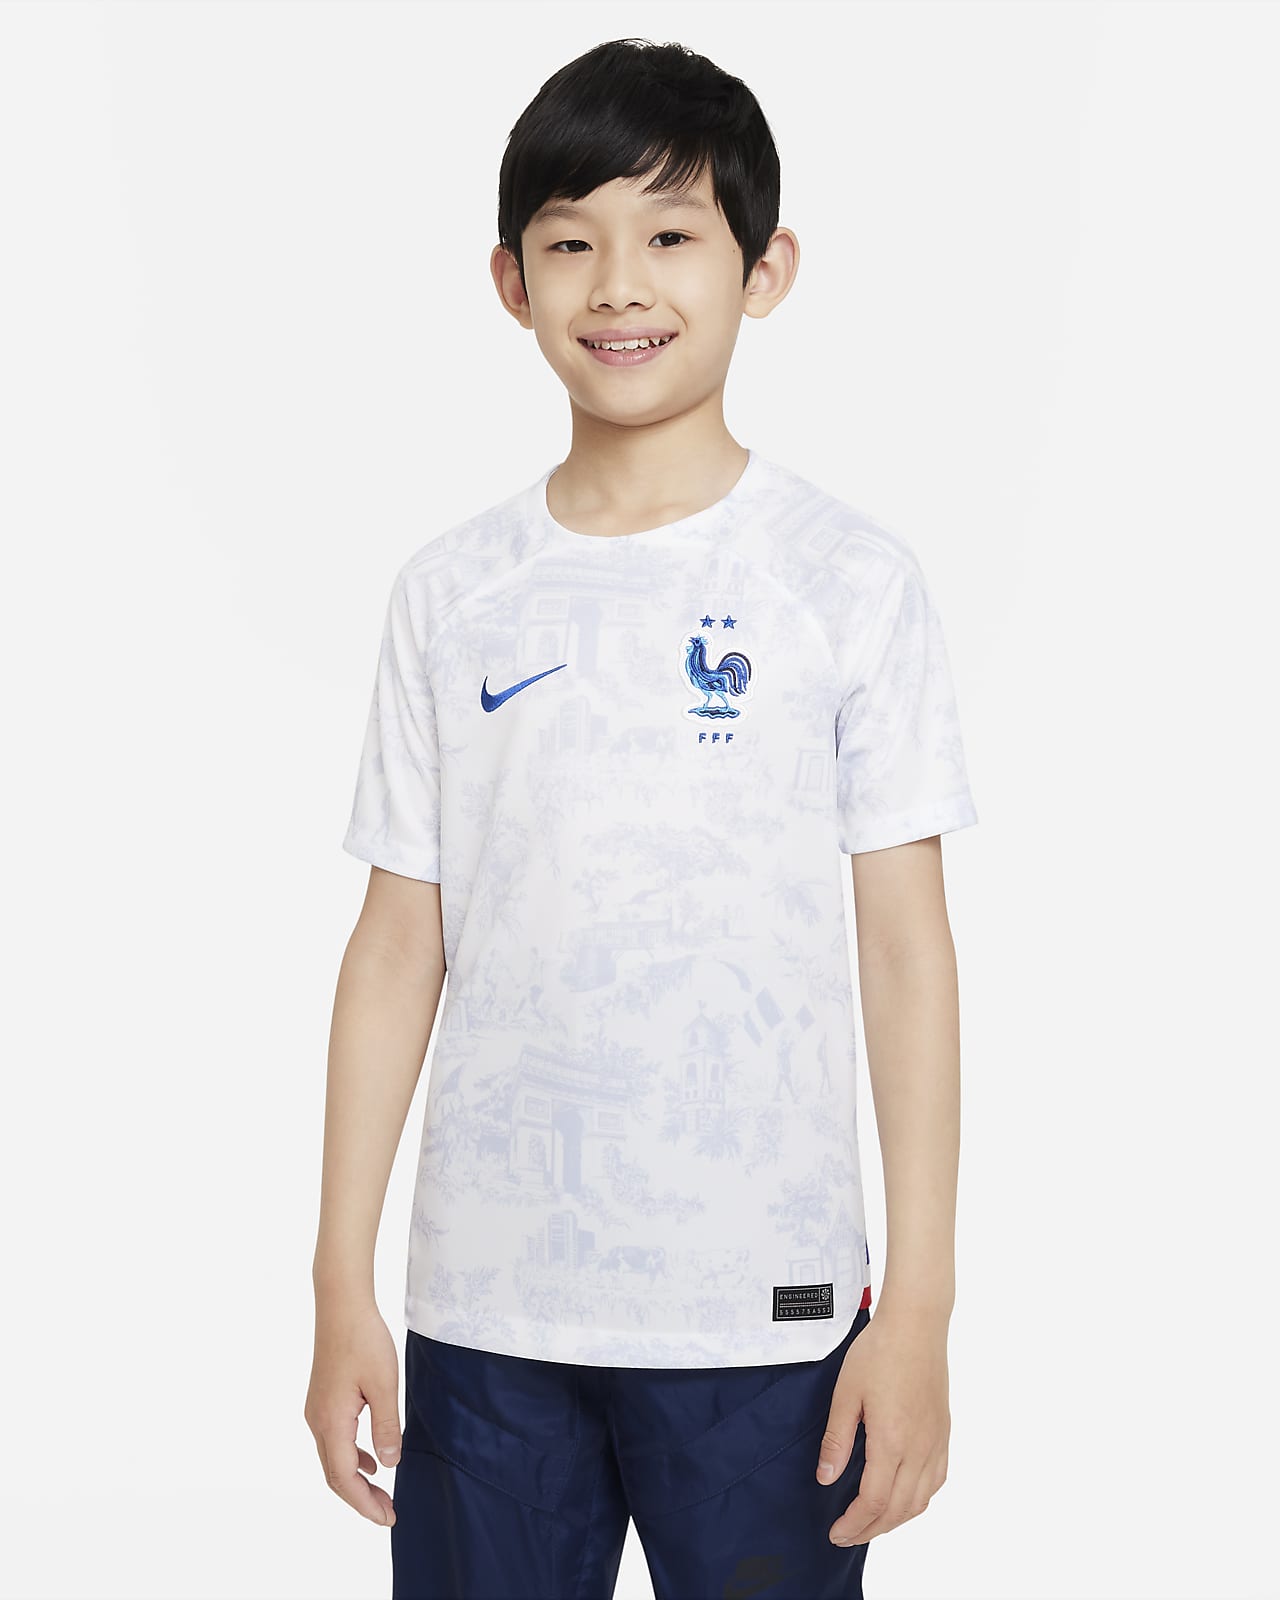 Fotbalový dres pro větší děti Nike Dri-FIT FFF 2022/23 Stadium, venkovní